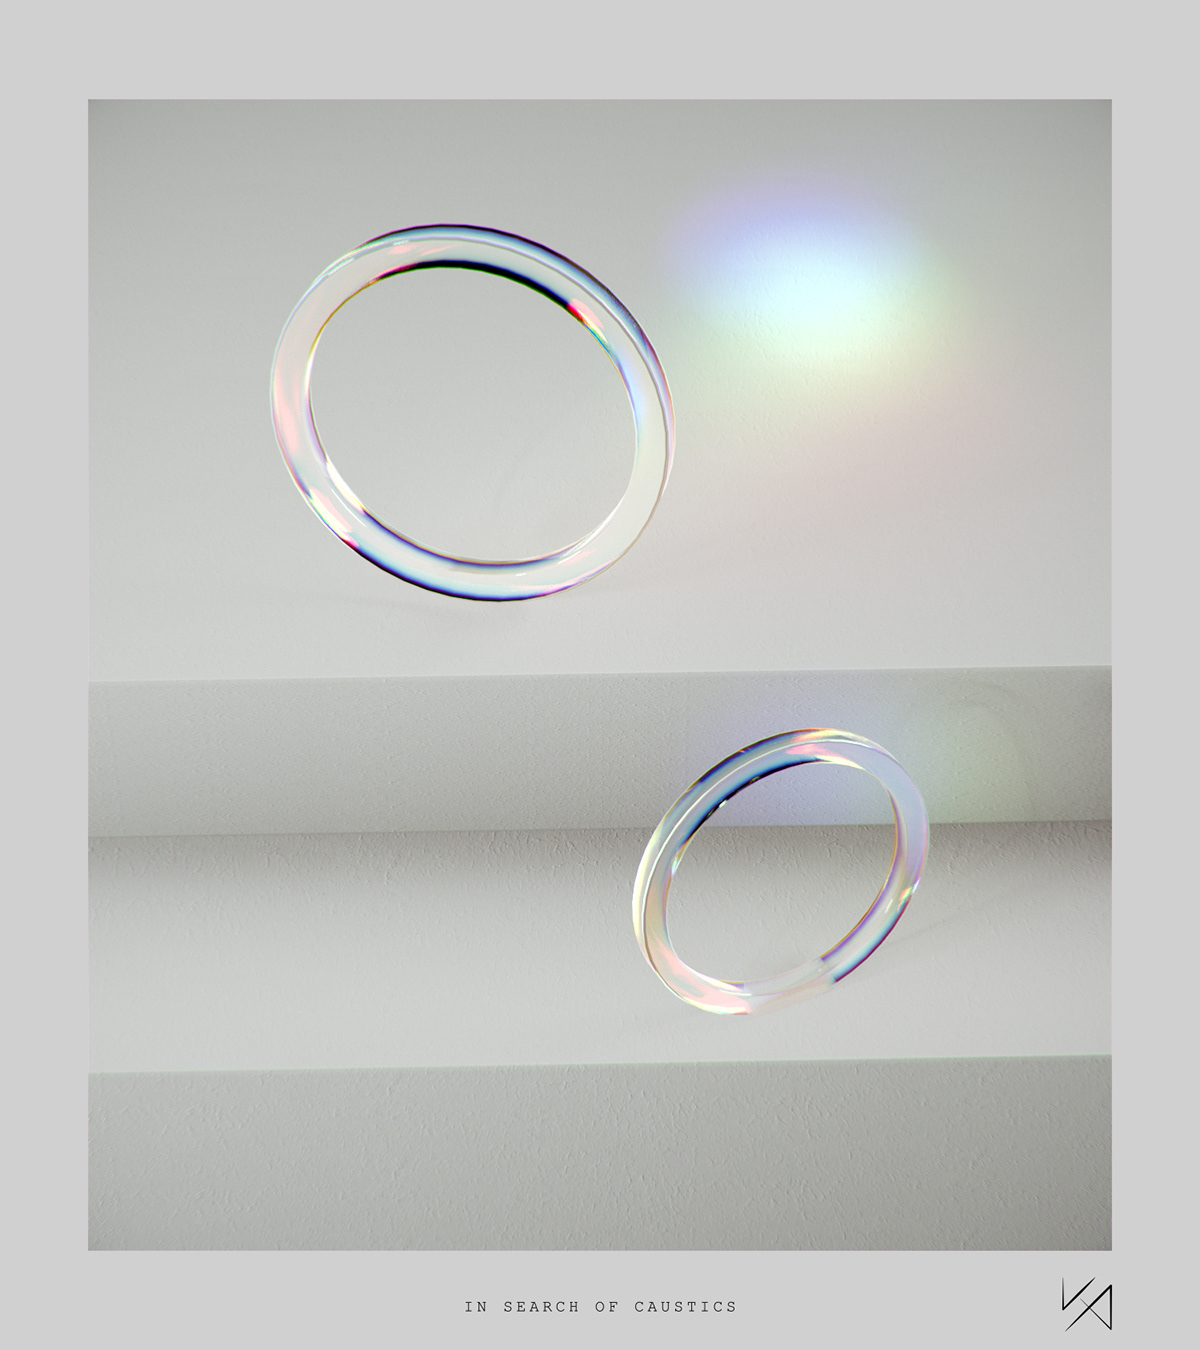 abstract c4d caustics glass redshift dispersion iridescent refraction 3D 3dart